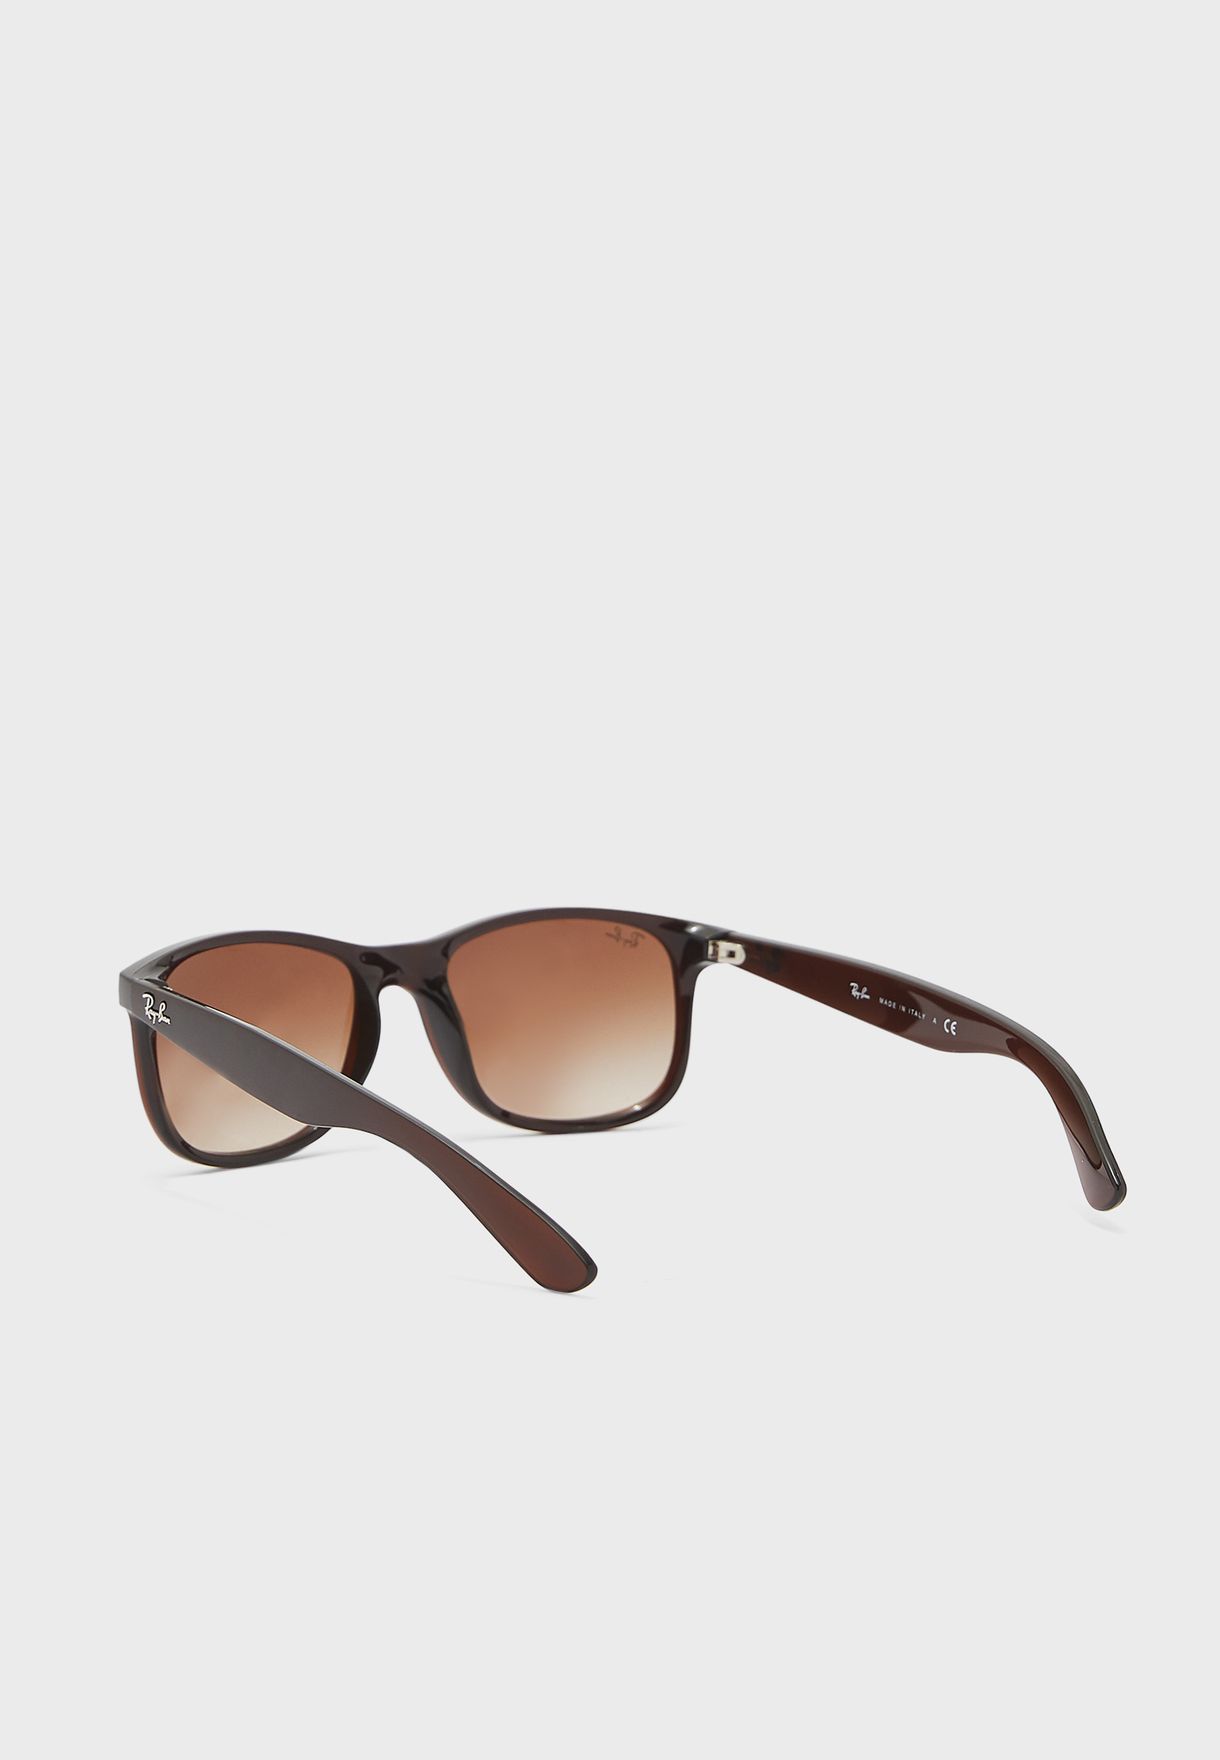 0Rb4202 Square Sunglasses